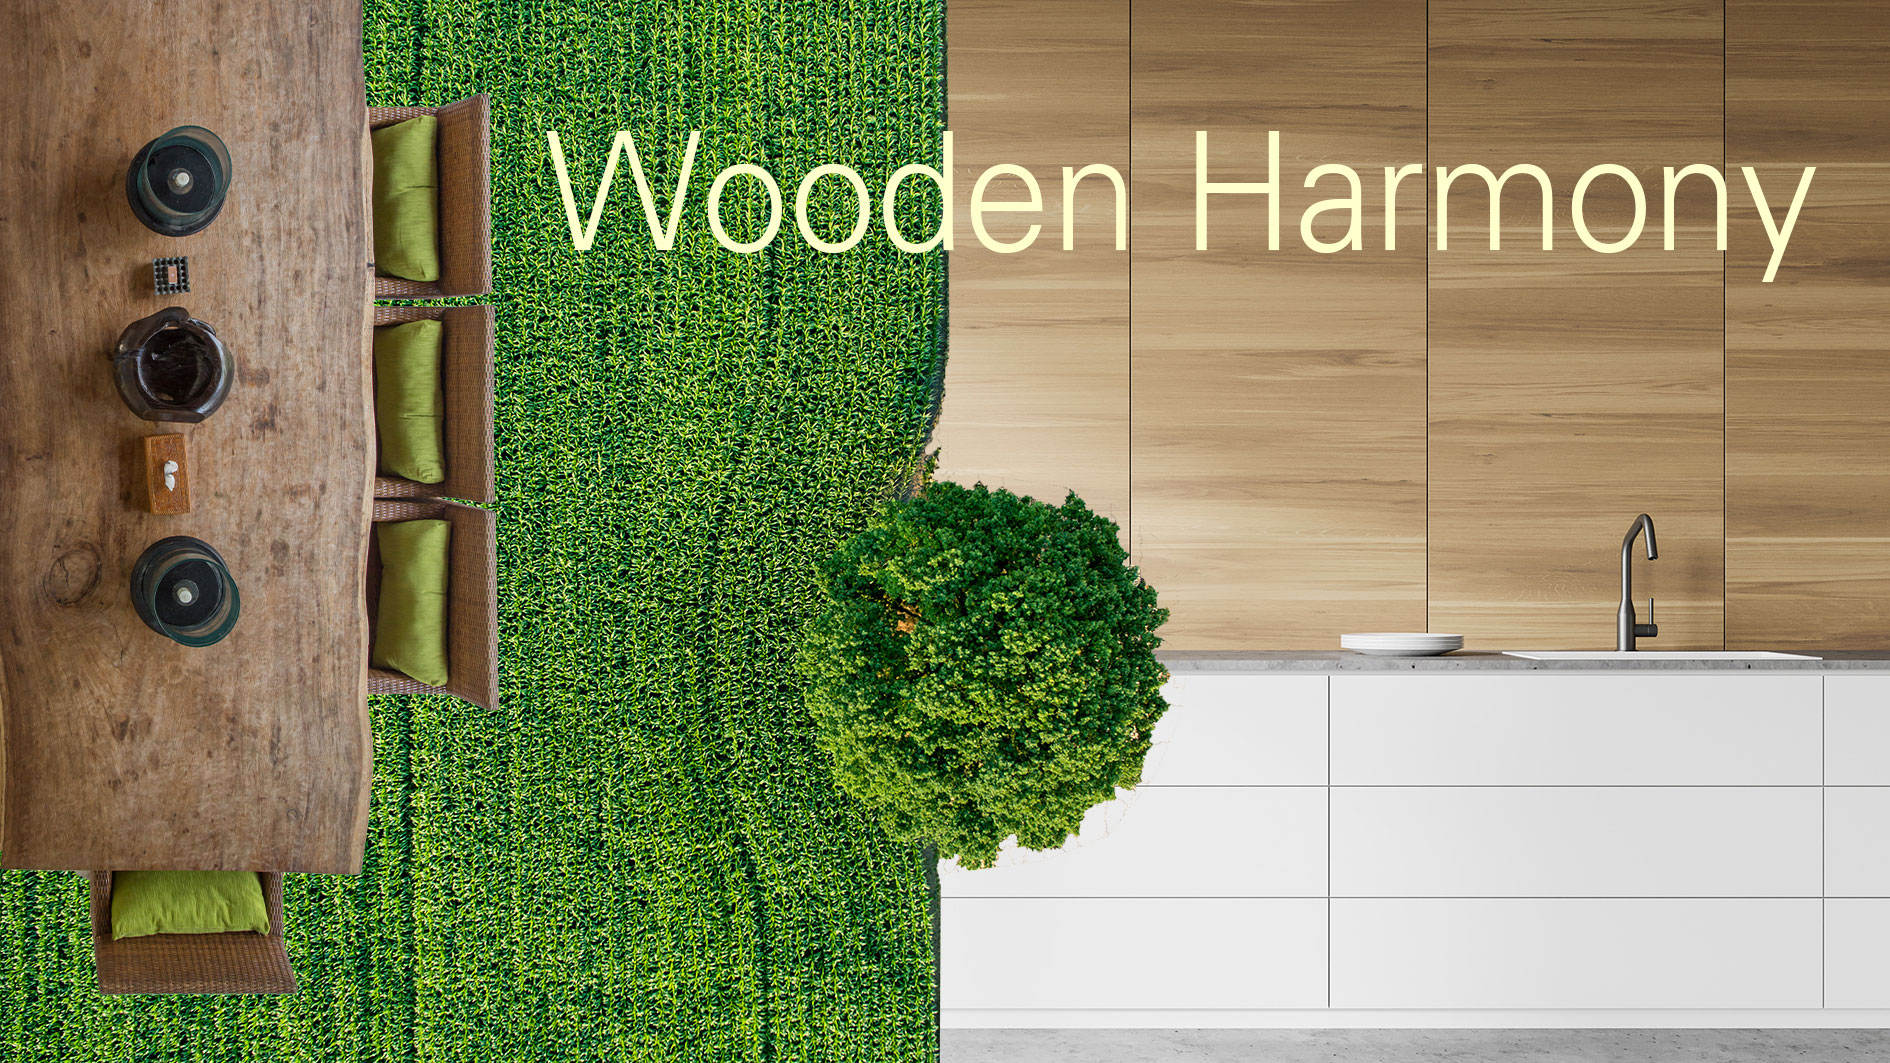 InVIDO Wooden Harmony